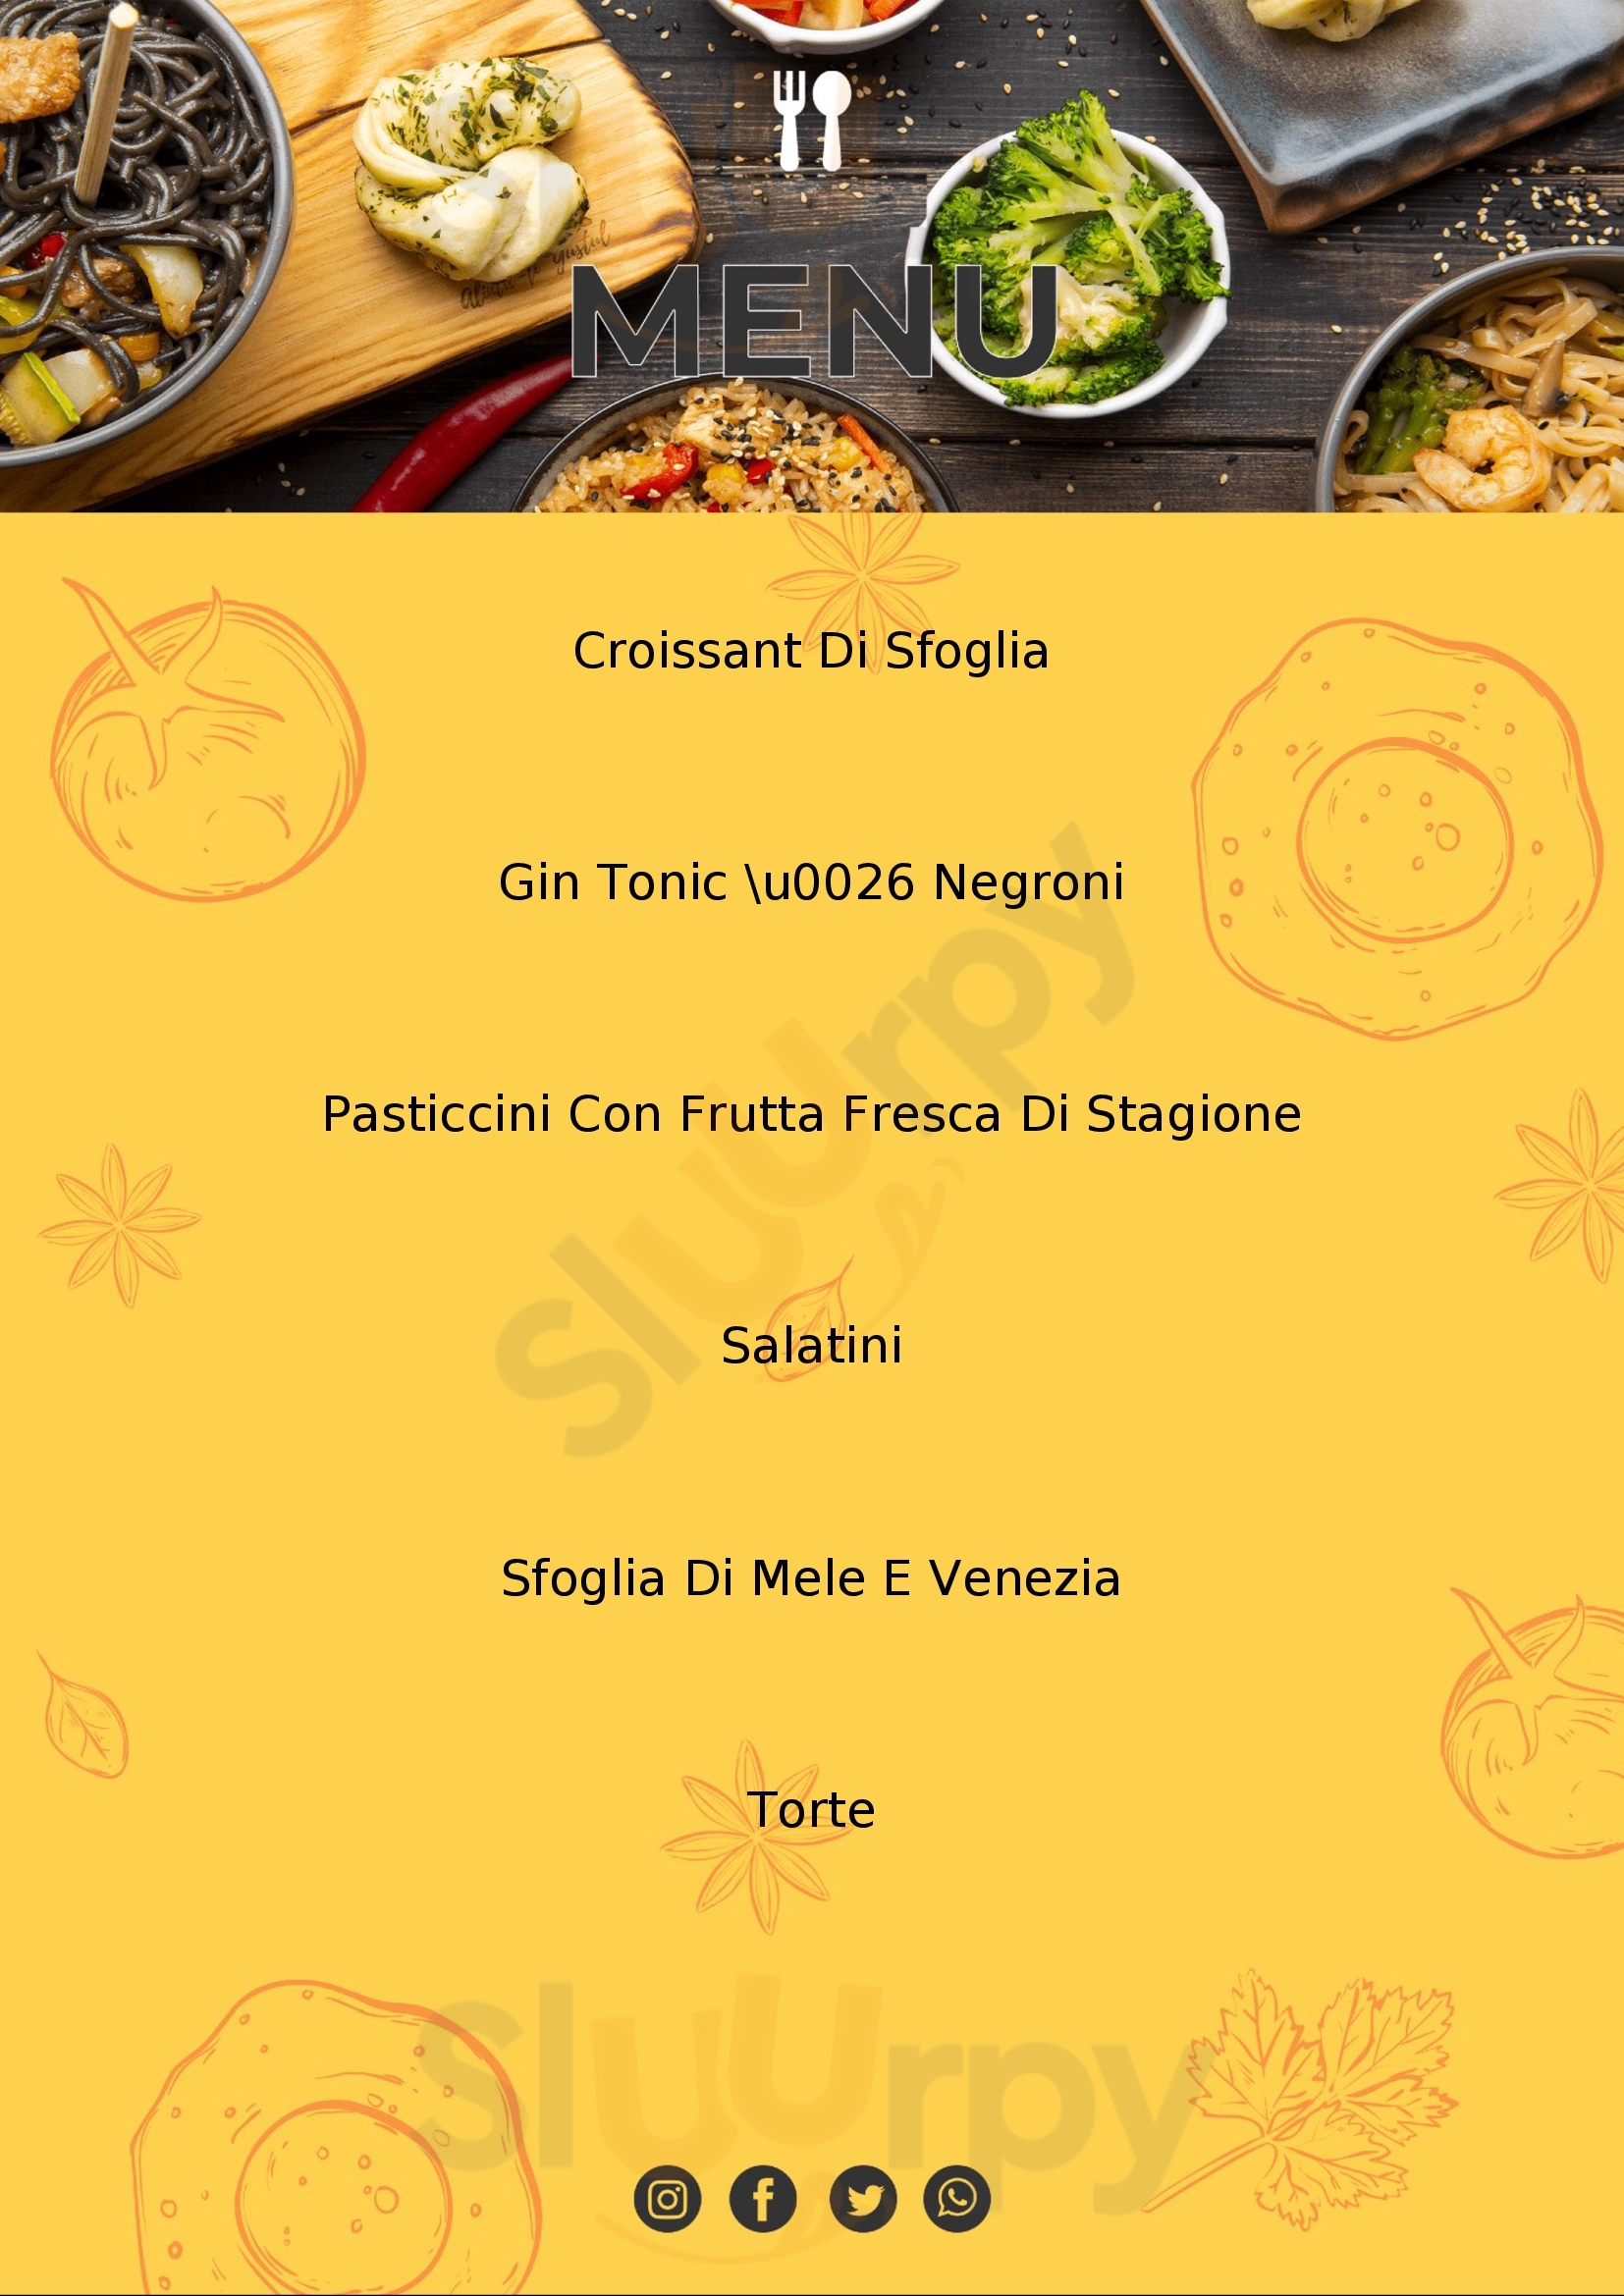 Pasticceria Bar Bonfante Cuneo menù 1 pagina